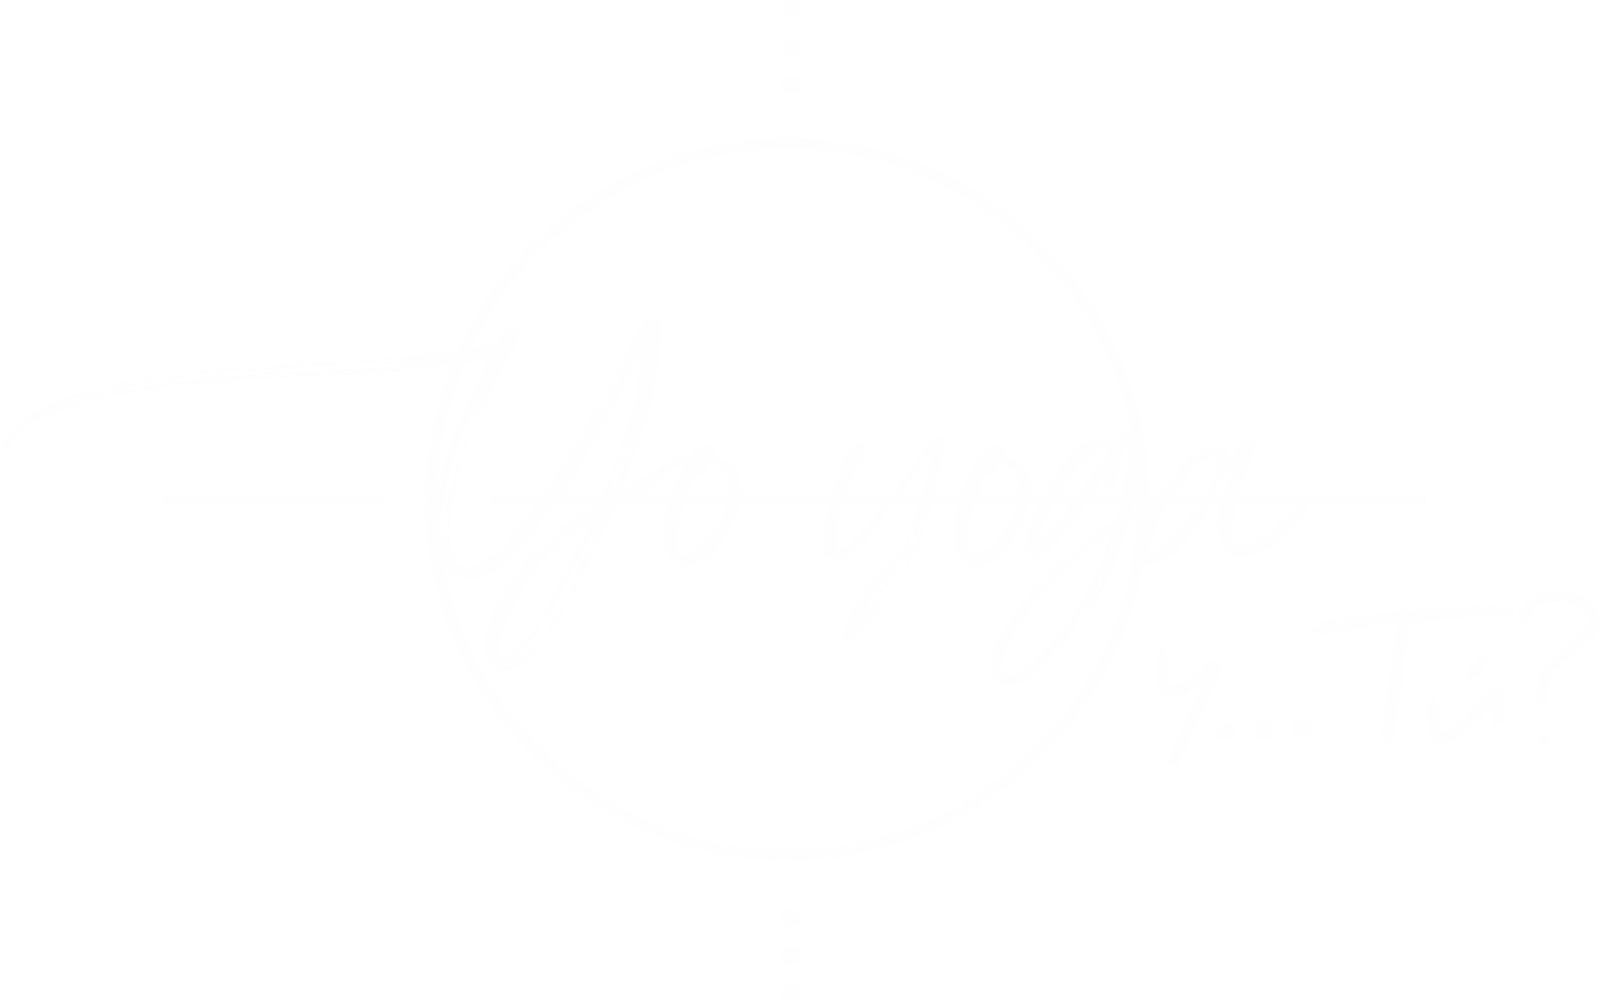 yoyogaytu logo